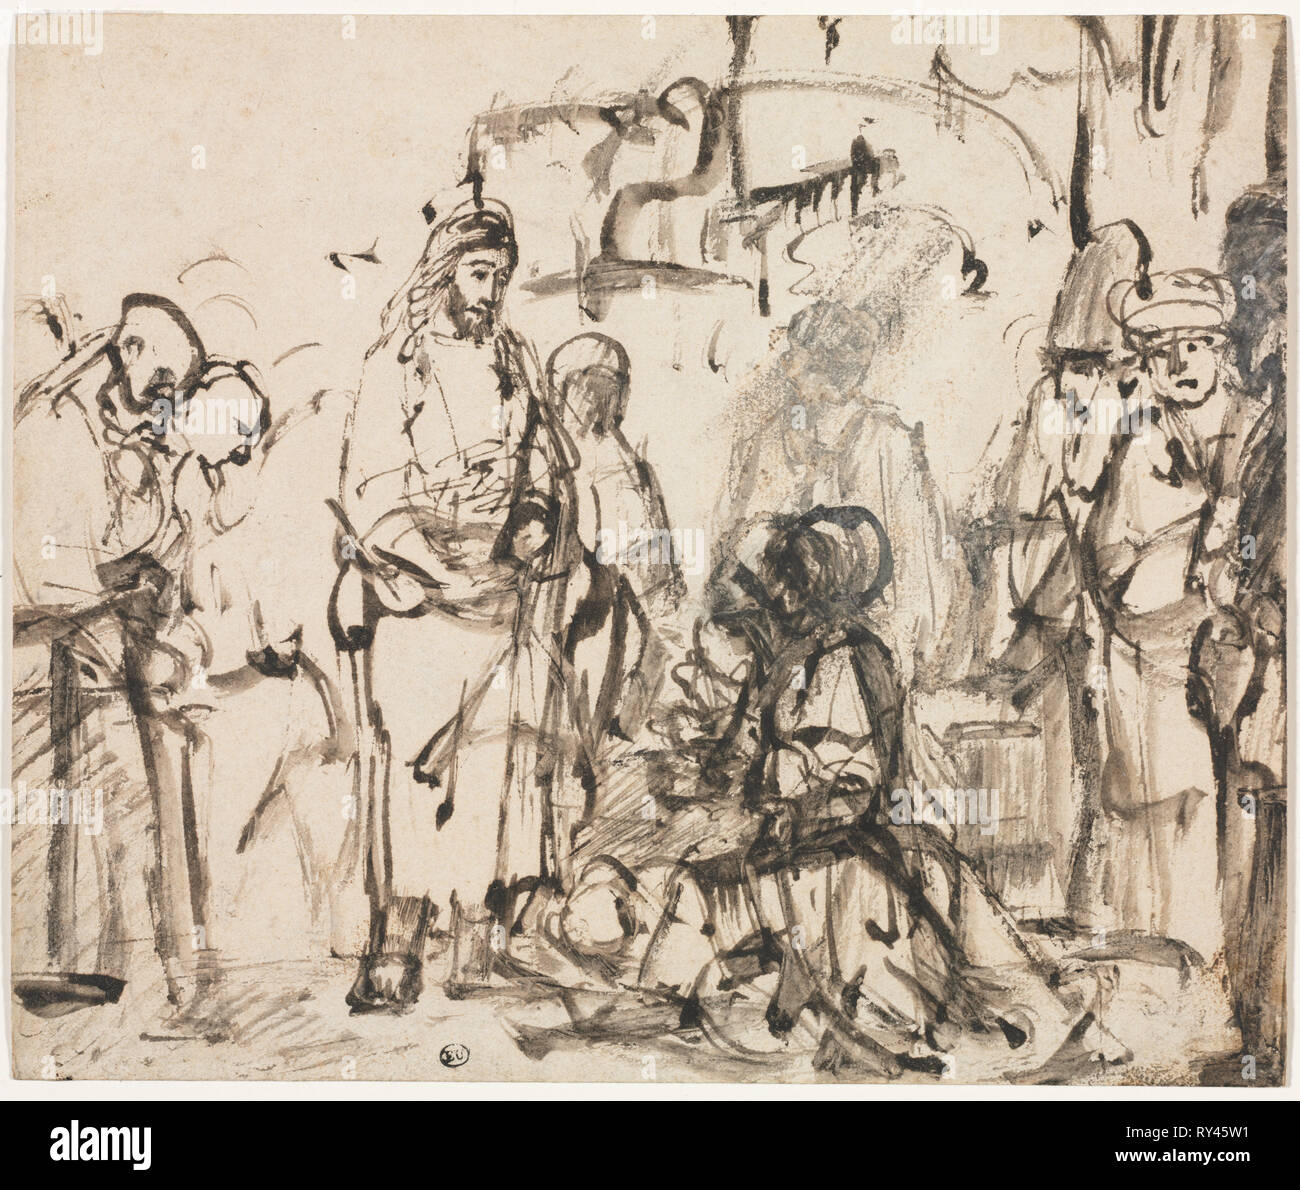 Die Begegnung Christi mit Martha und Maria nach dem Tod des Lazarus, C. 1662 - 65. Rembrandt van Rijn (Niederländisch, 1606-1669). Rohrfeder und brauner Tinte und waschen, mit weißen Gouache erhöht (in den Köpfen der knienden Figuren); Blatt: 17,5 x 20,8 cm (6 7/8 x 8 3/16 in.); sekundäre Support: 17,5 x 20,8 cm (6 7/8 x 8 3/16 in. Stockfoto